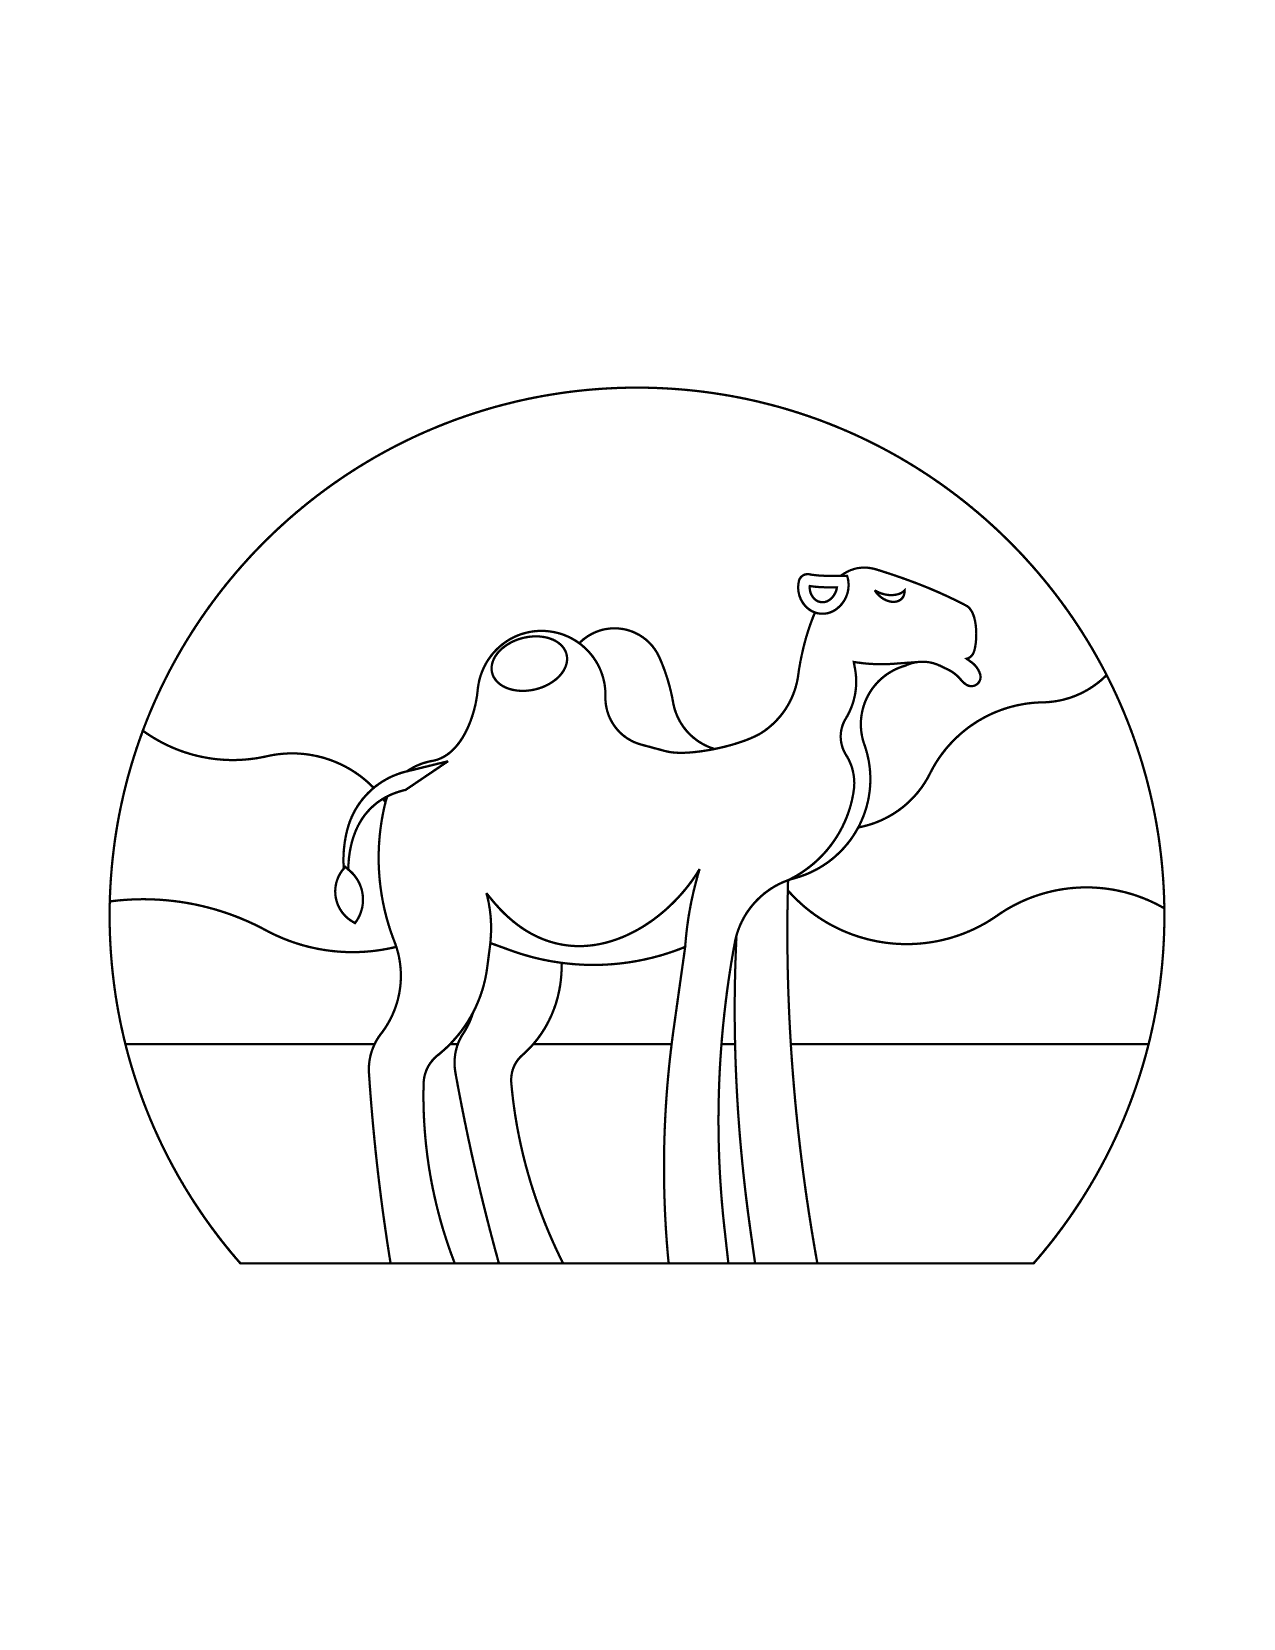 Camel Illustration To Color